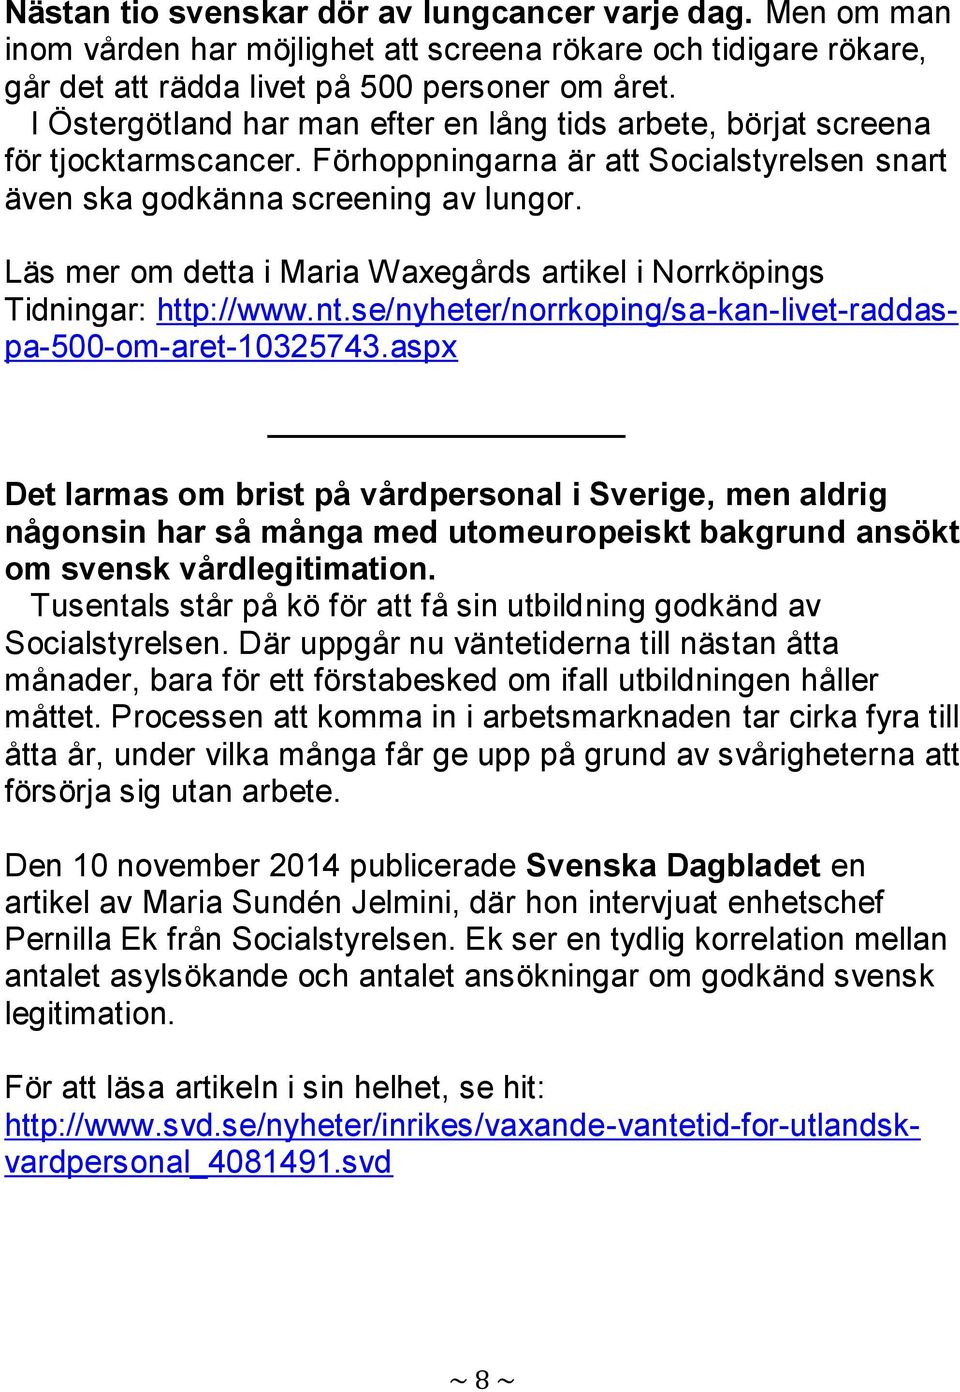 Läs mer om detta i Maria Waxegårds artikel i Norrköpings Tidningar: http://www.nt.se/nyheter/norrkoping/sa-kan-livet-raddaspa-500-om-aret-10325743.